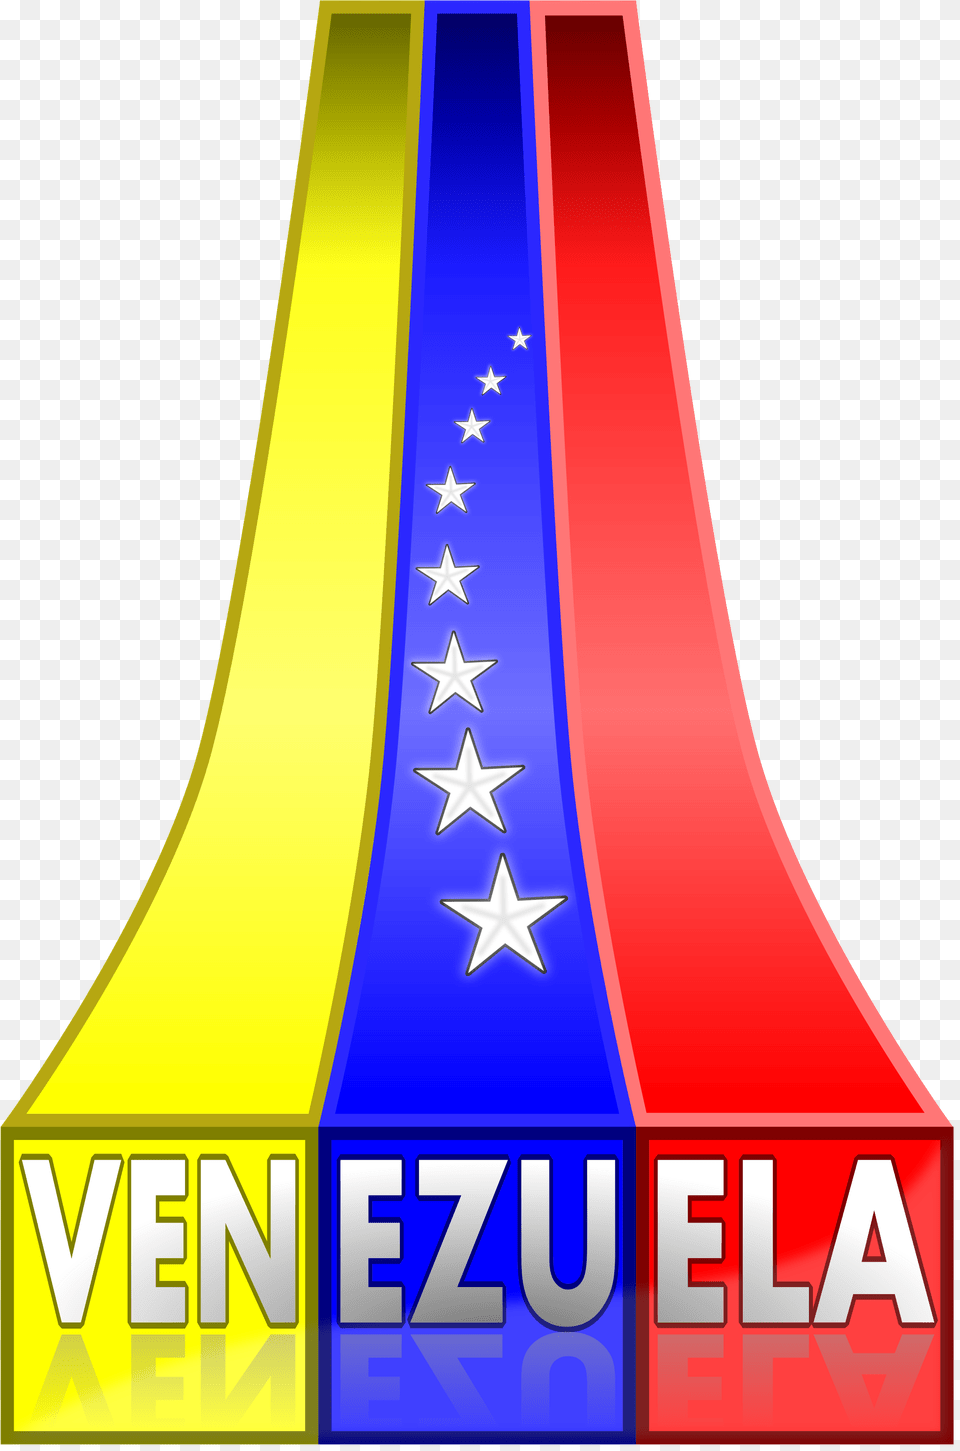 Imagenes De Banderas De Venezuela Download Banderas De Venezuelas En, Circus, Leisure Activities Png Image